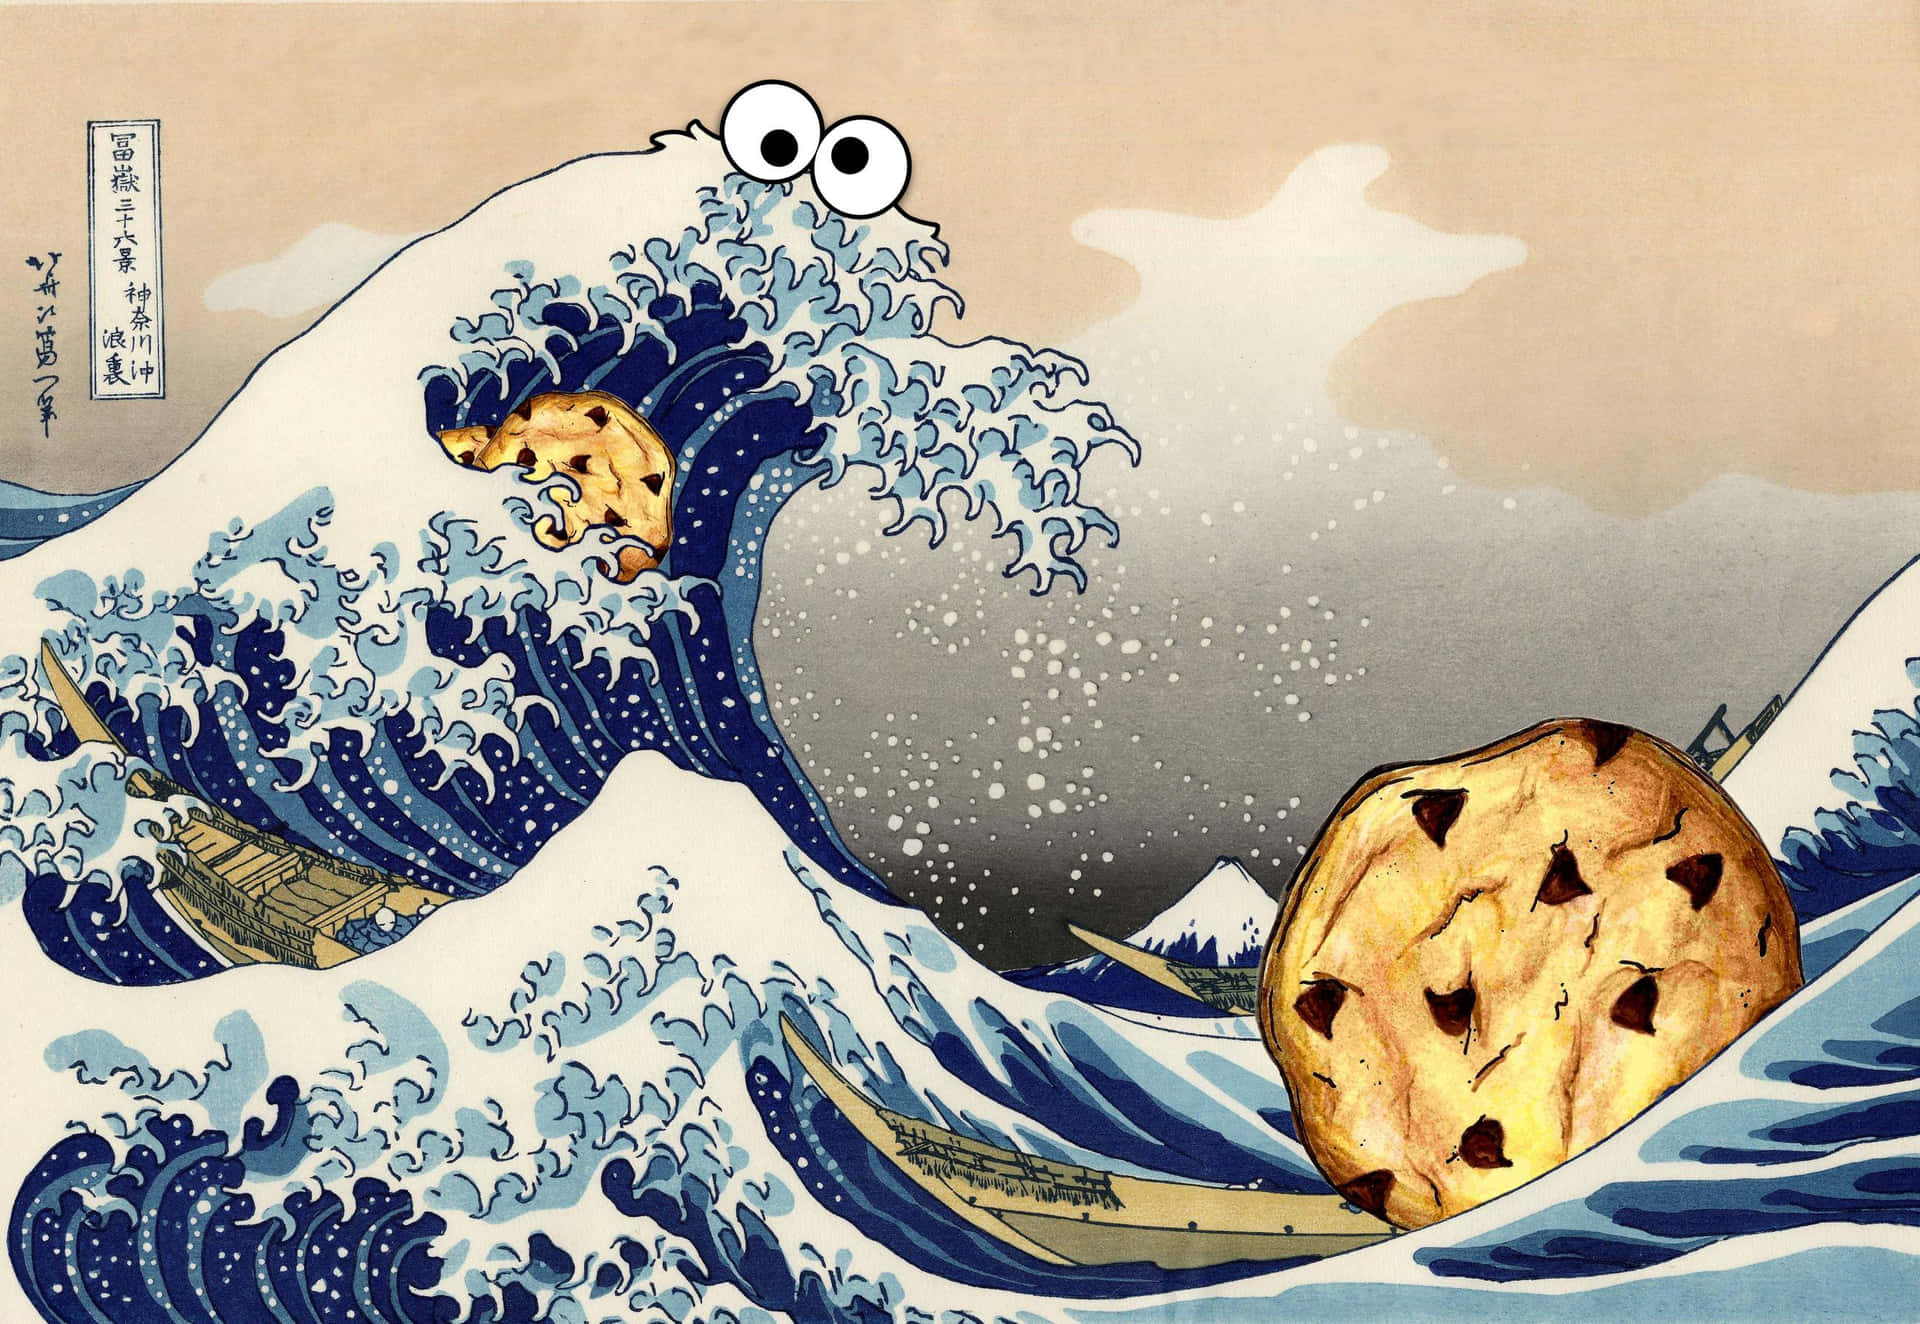 Cookie Monster indulging in his favorite cookies